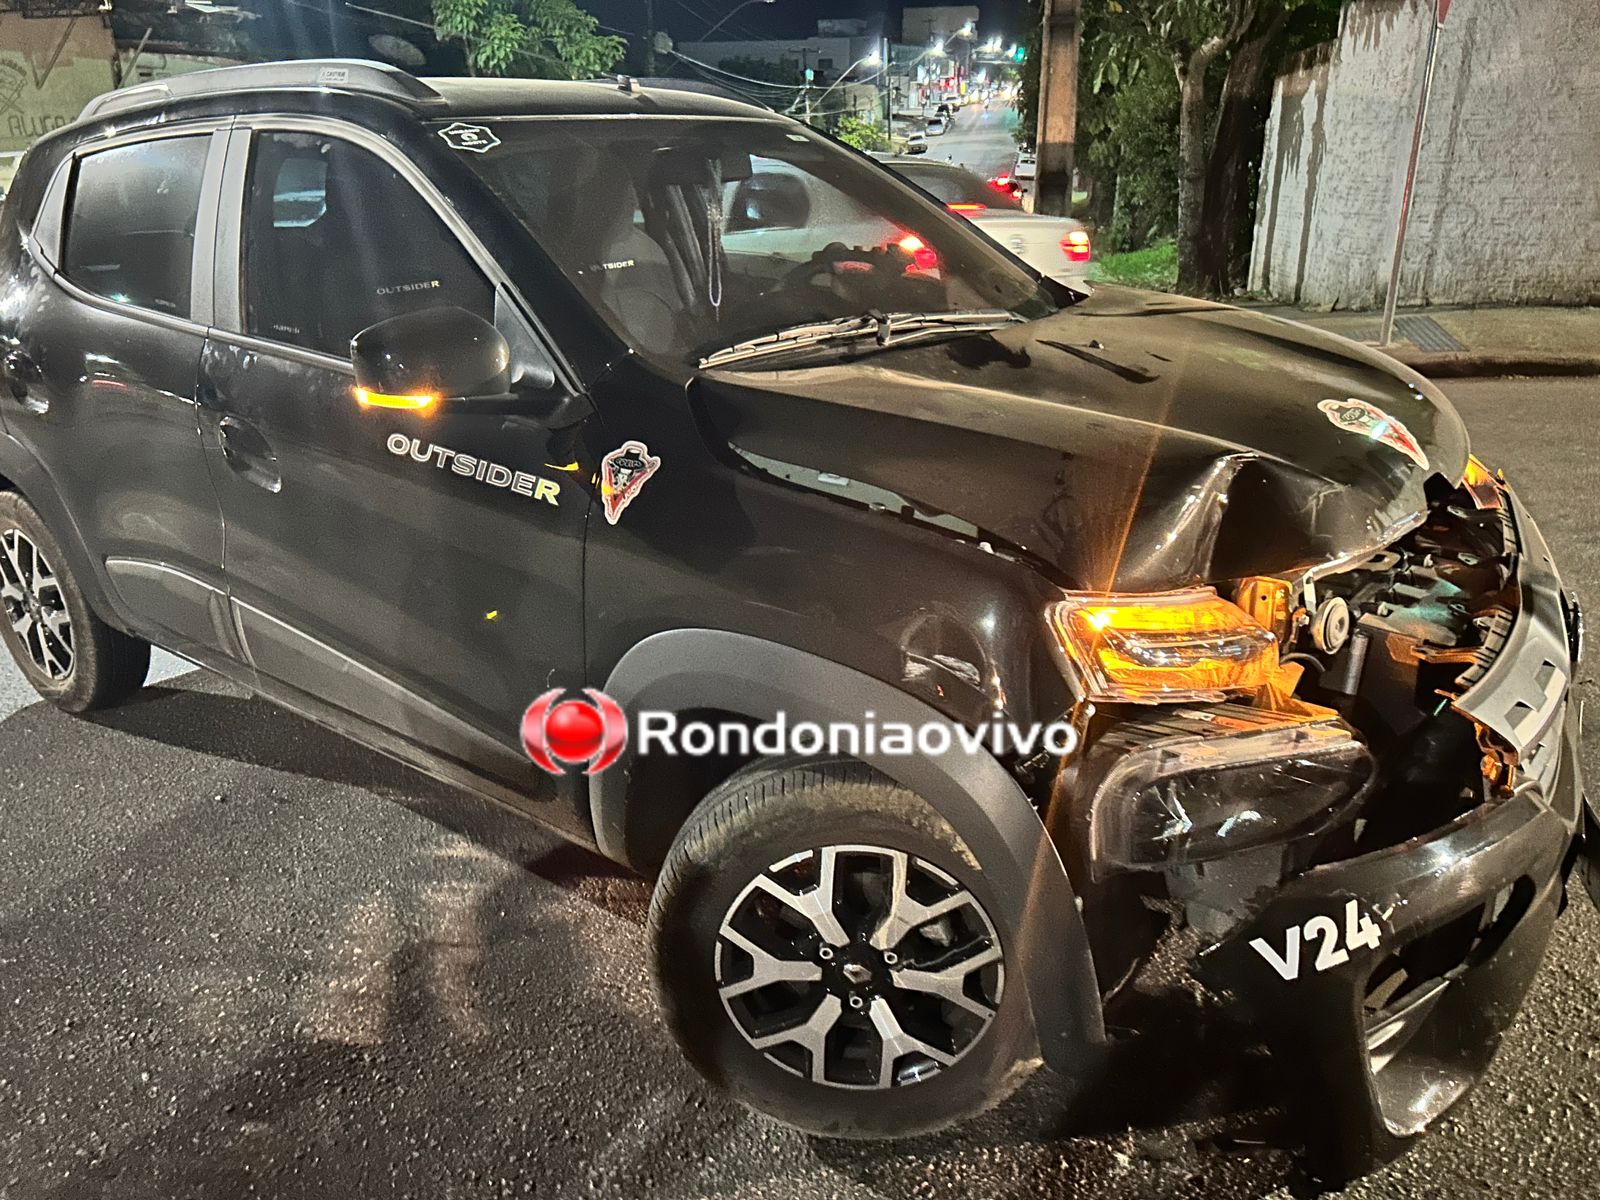 URGENTE: Grave acidente envolvendo moto e carro de aplicativo na Brasília